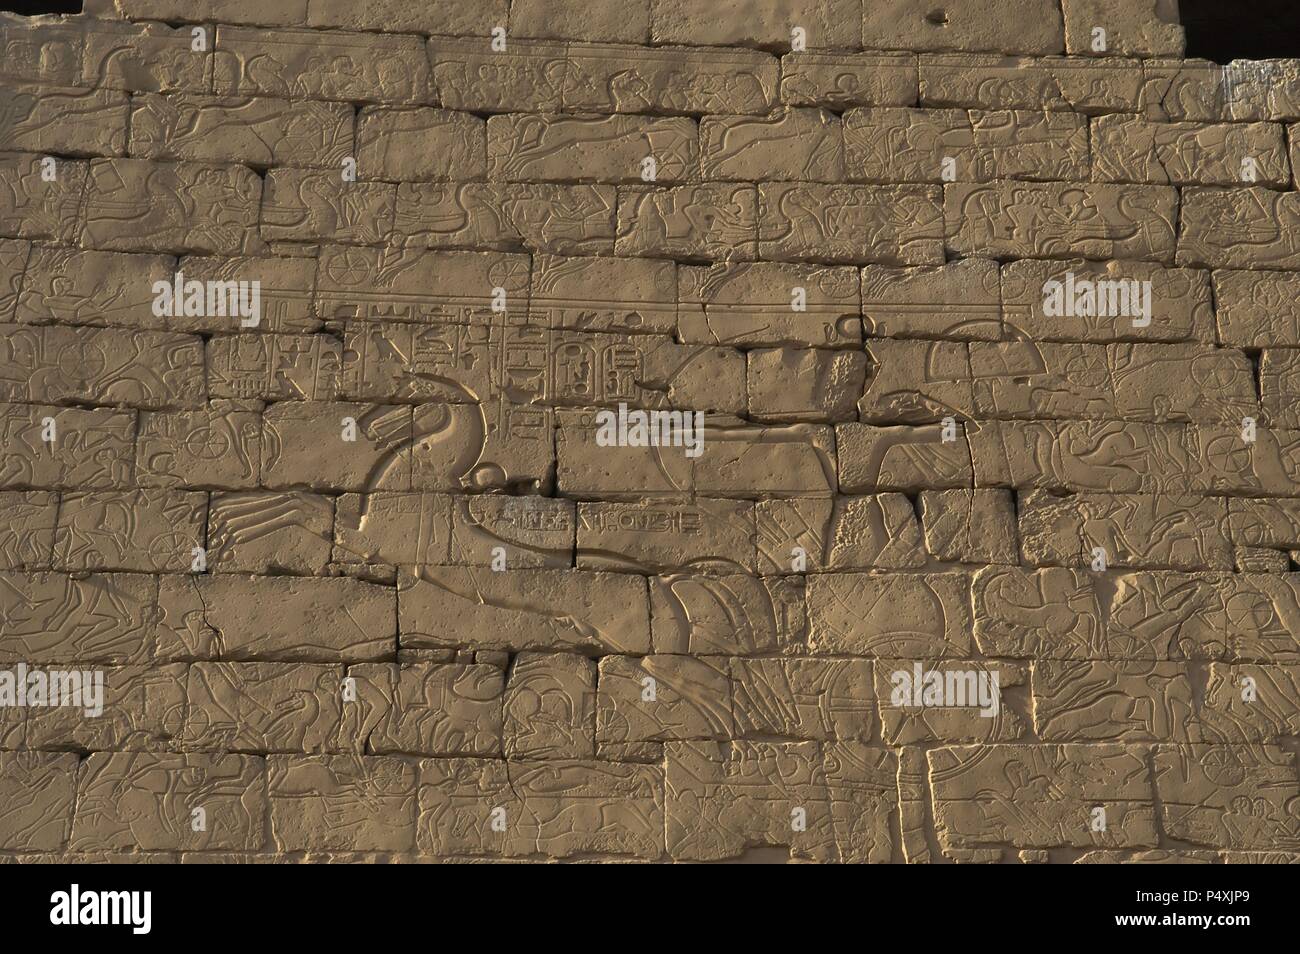 Ramesse II. Rilievo raffigurante il Faraone su di un carro nella battaglia di Kadesh (Siria settentrionale). Nuovo Regno. Tempio di Luxor. L'Egitto. Foto Stock